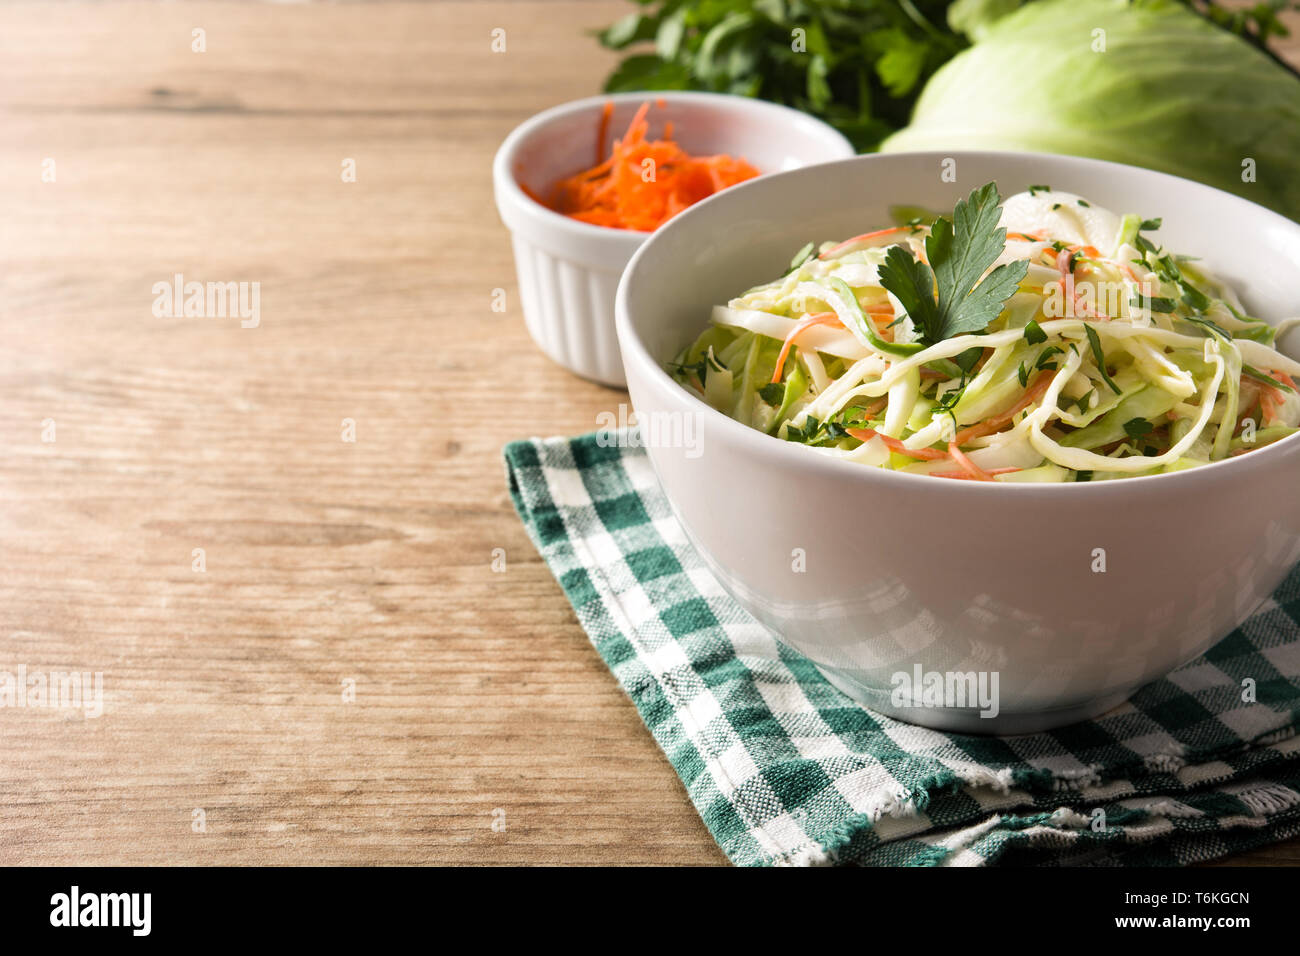 Krautsalat Salat in Weiß Schüssel auf hölzernen Tisch Stockfoto